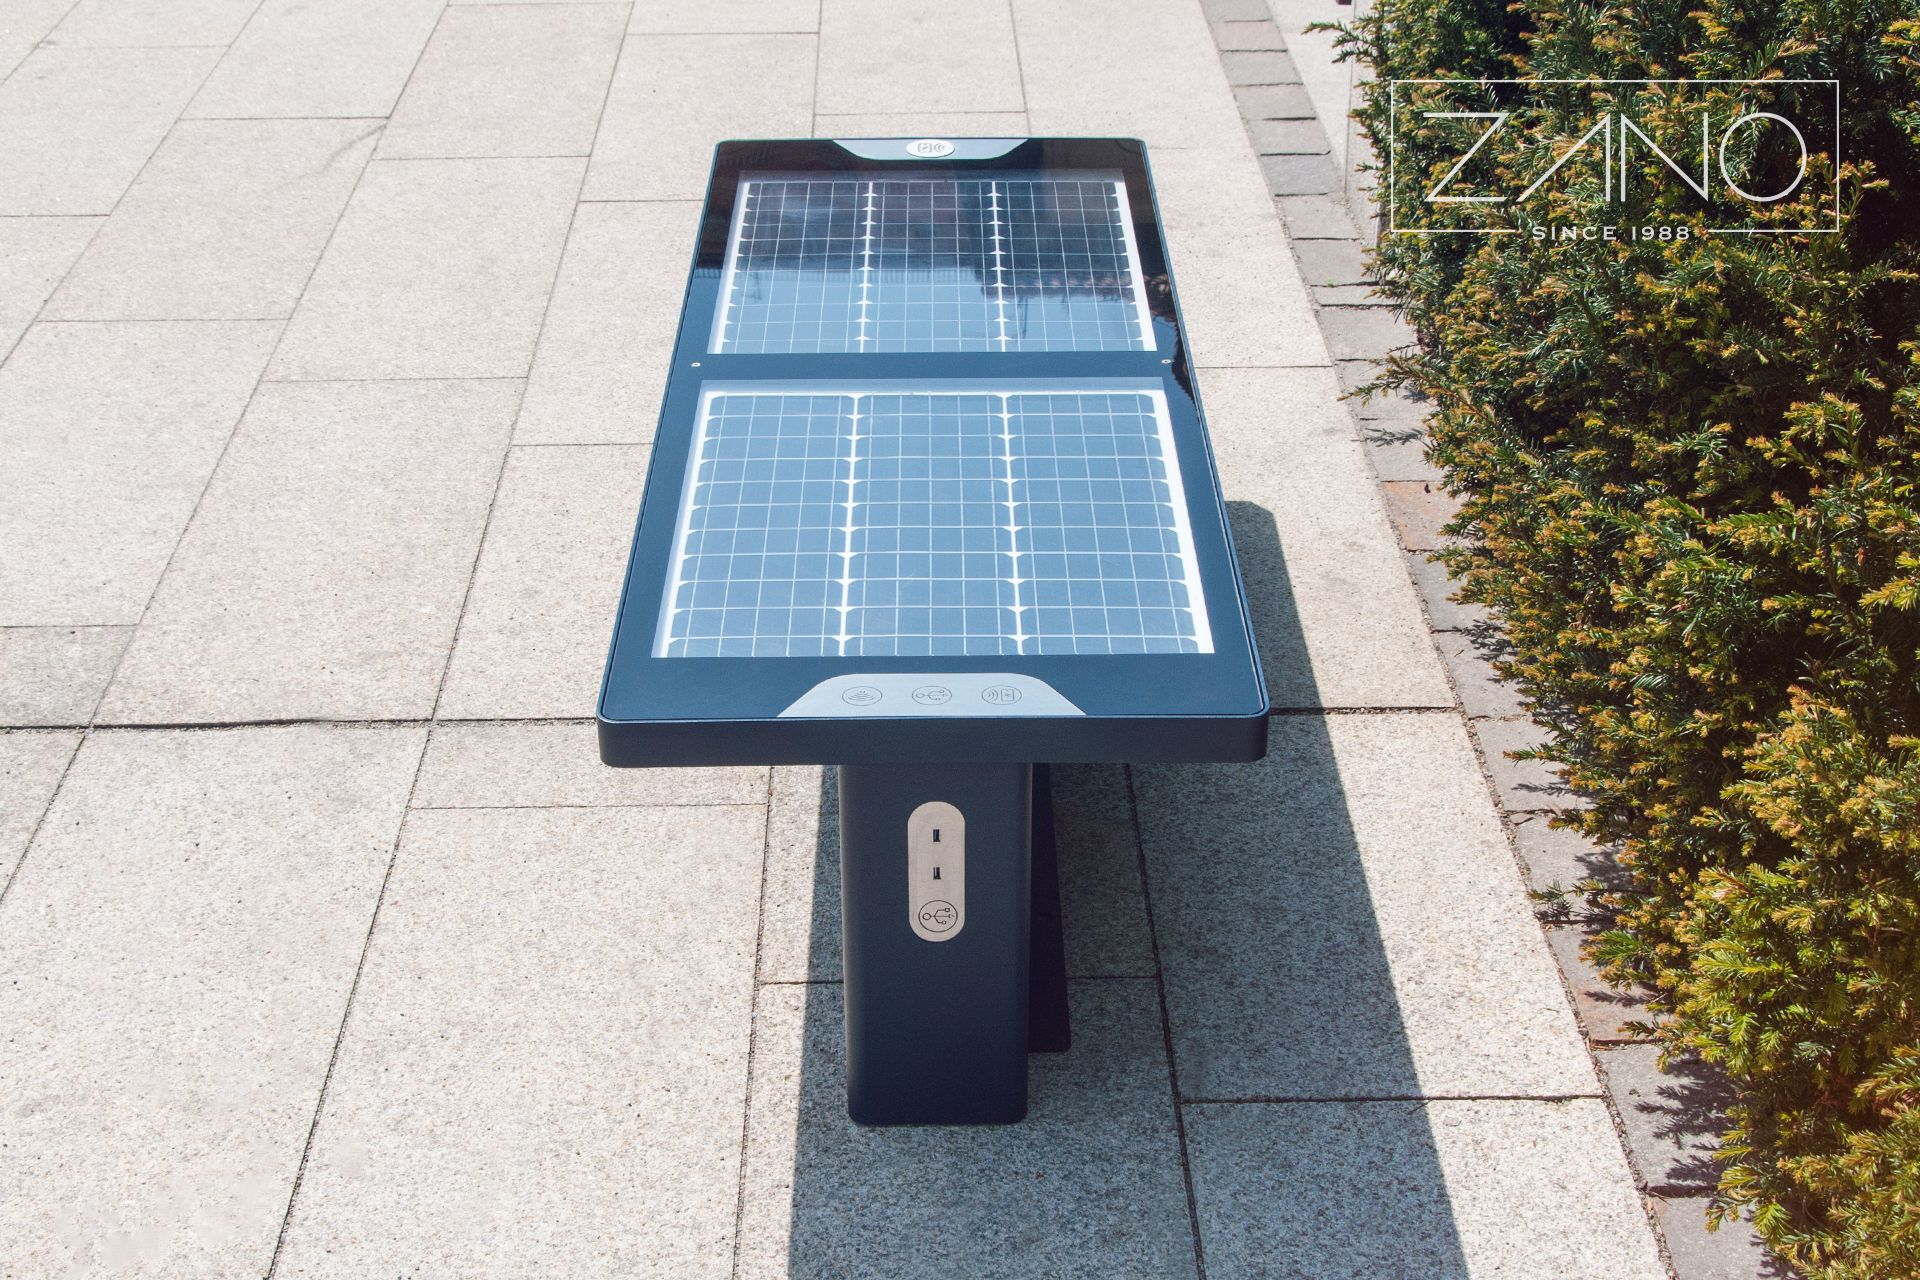 Ławka solarna zasilana przez panele fotowoltaiczne z wbudowanym usb, wi-fi, ładowarką indukcyjną